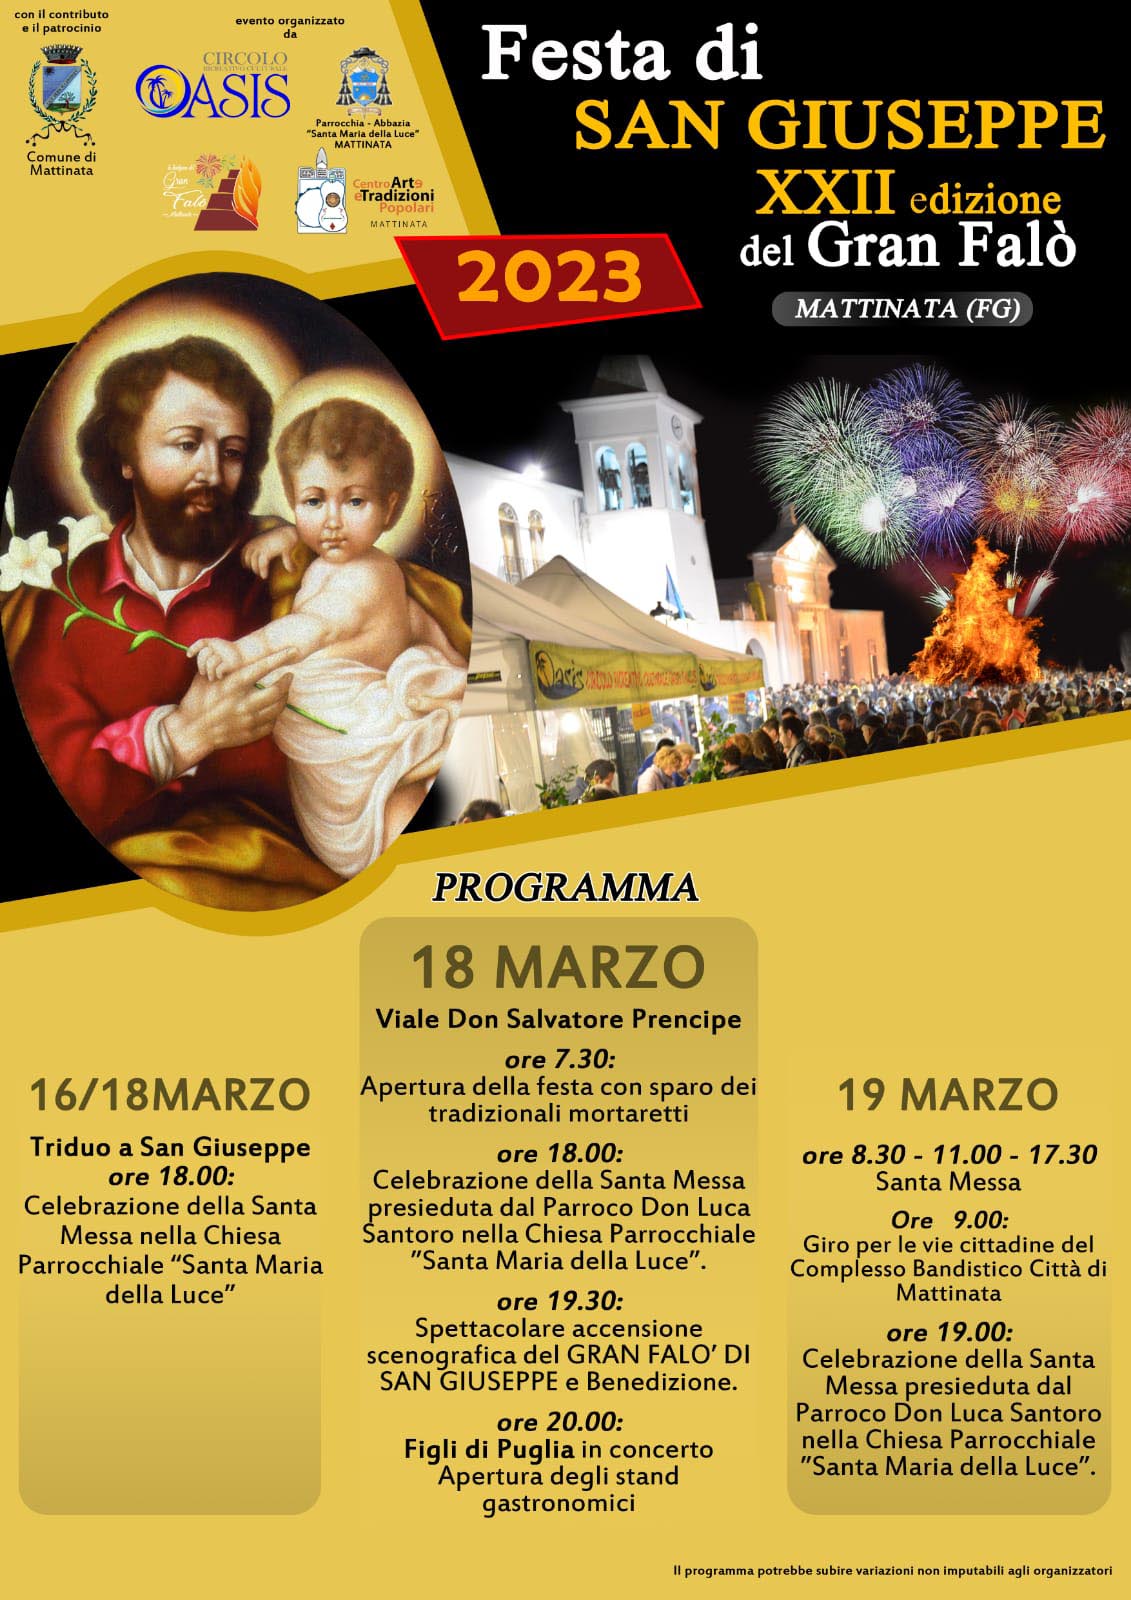 Festa di San Giuseppe 2023 - Il programma